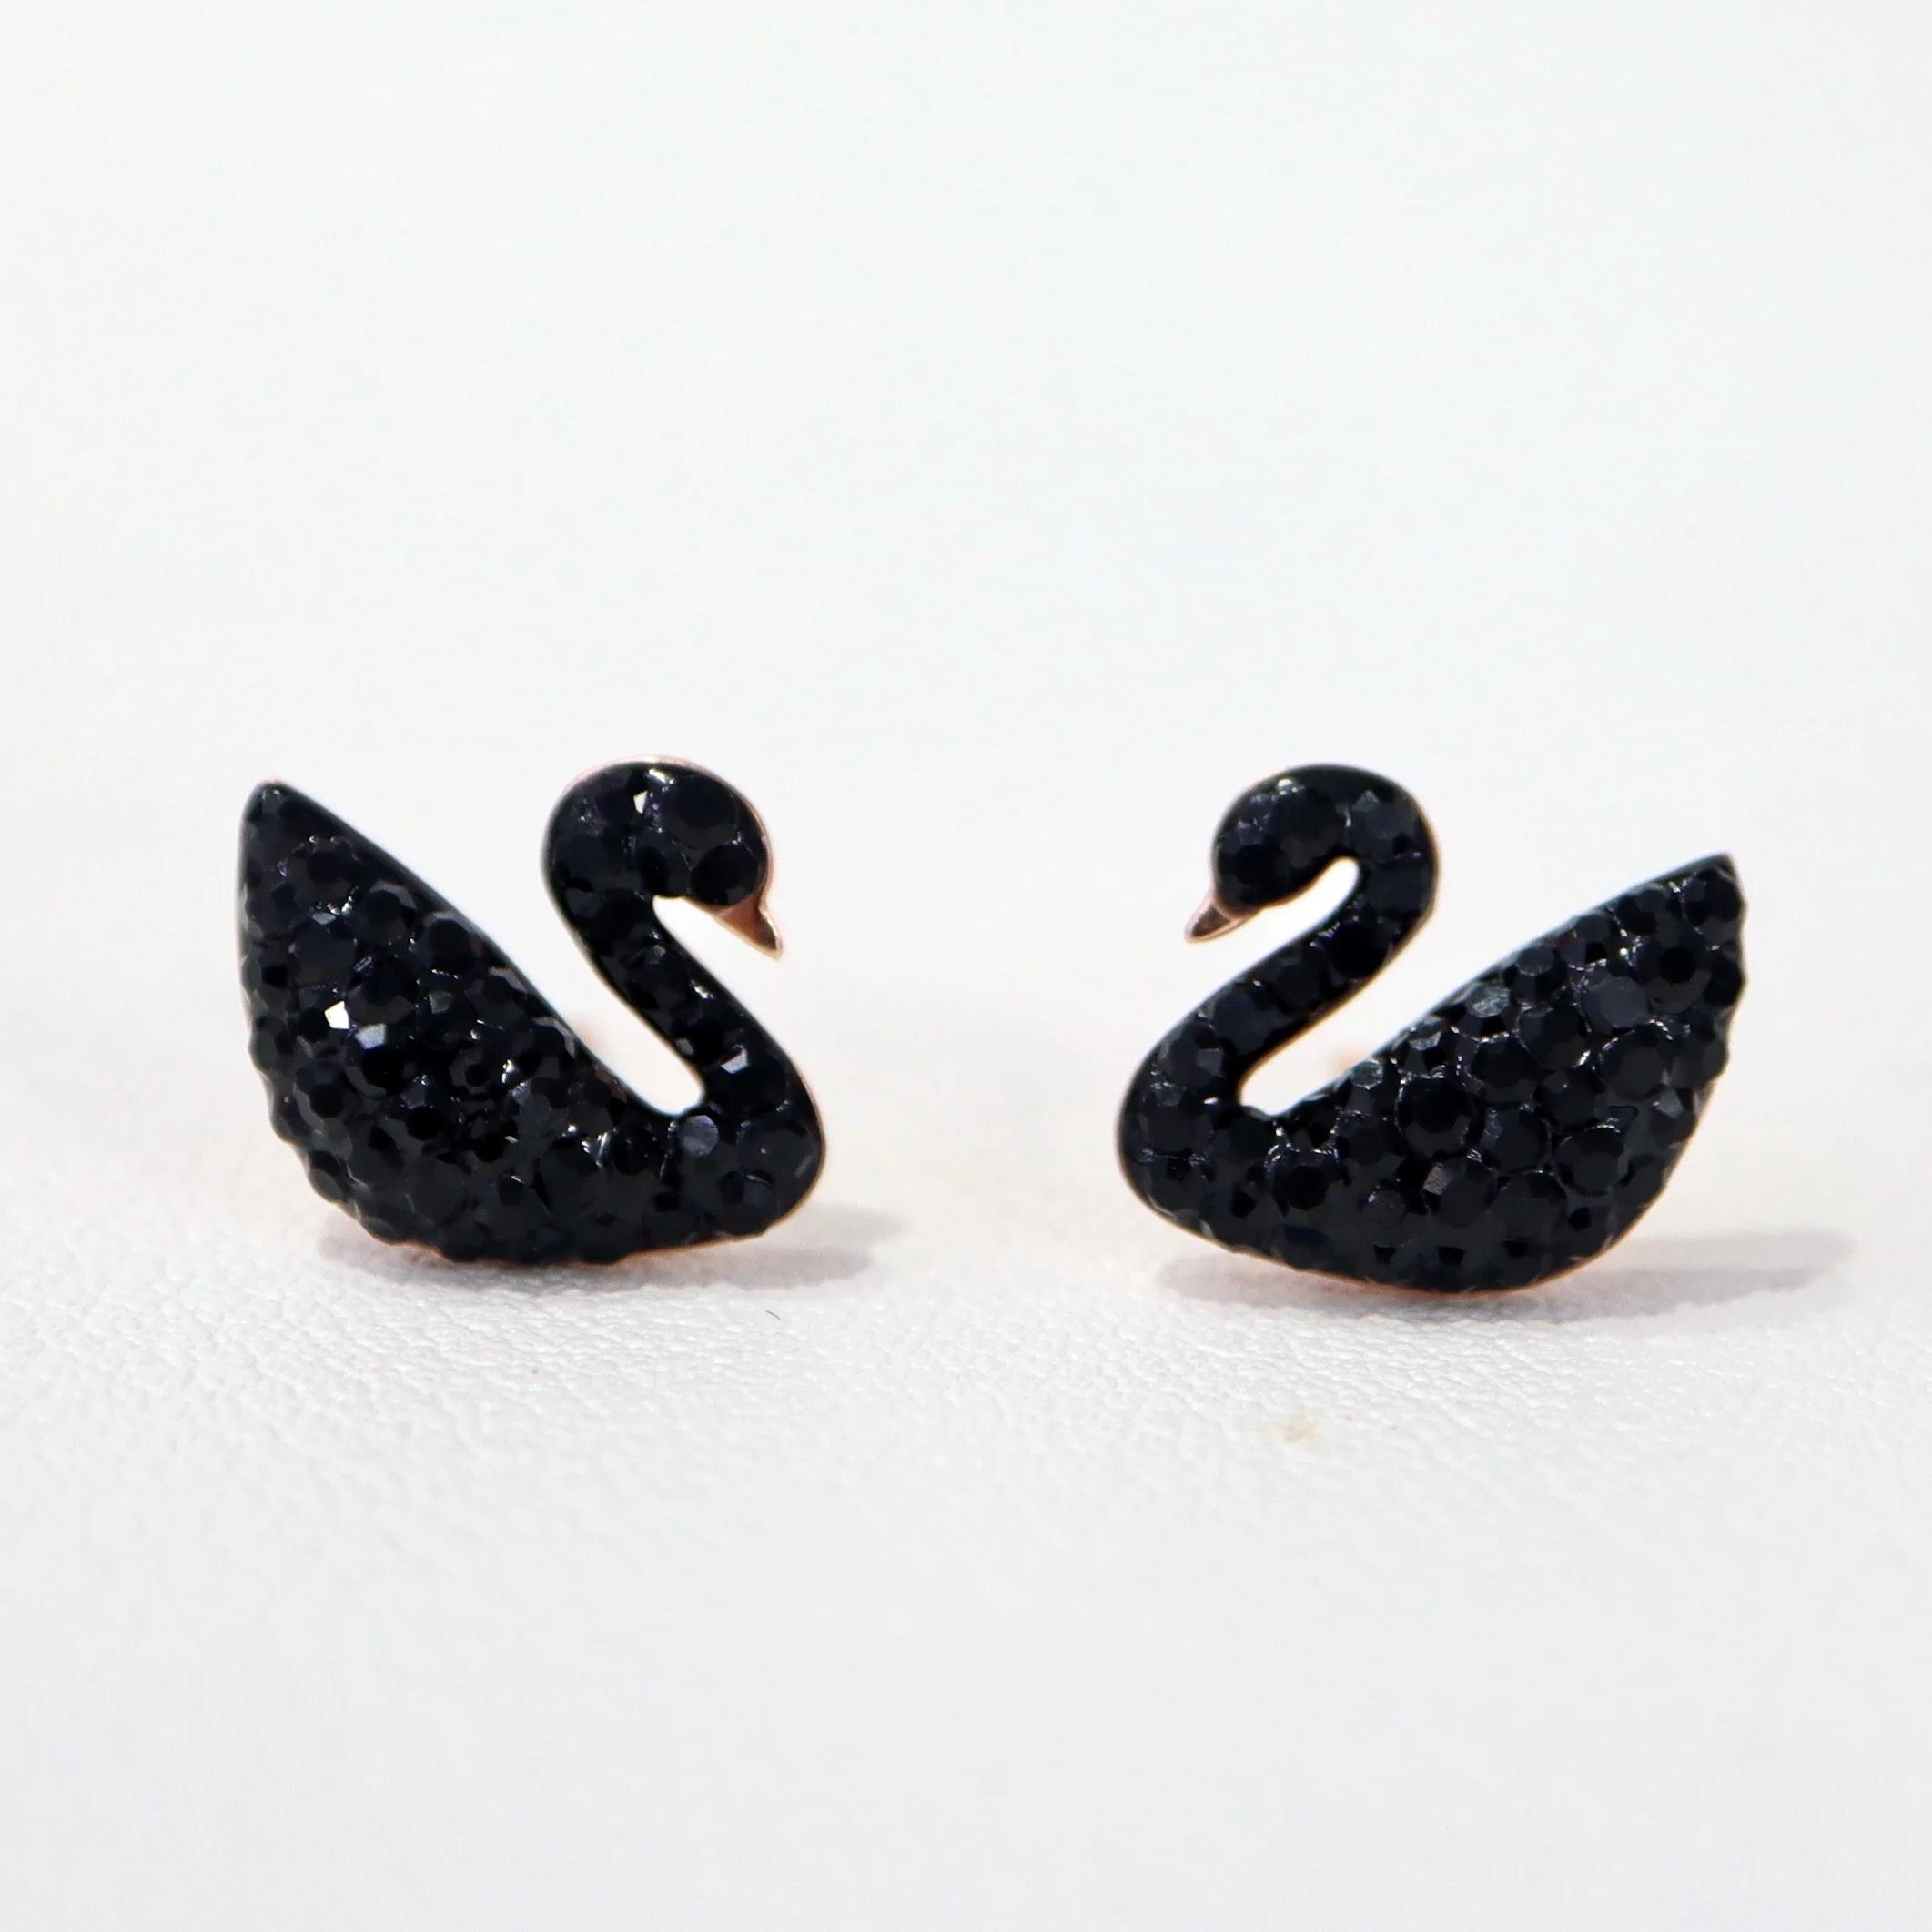 Crystal black swan studs